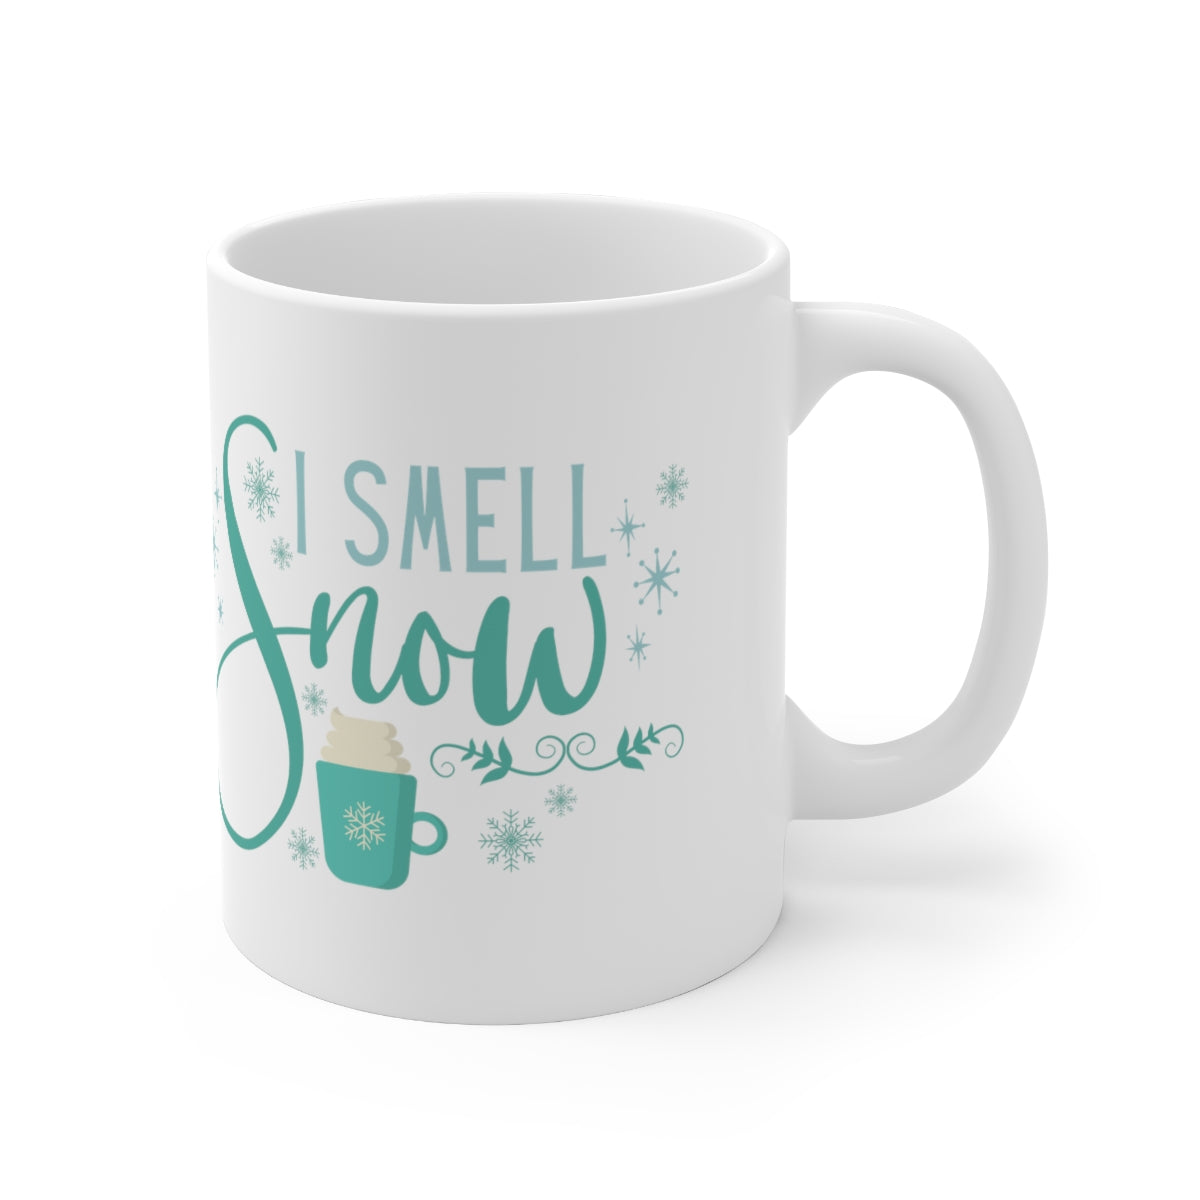 Snow Smell Ceramic Mug 11oz